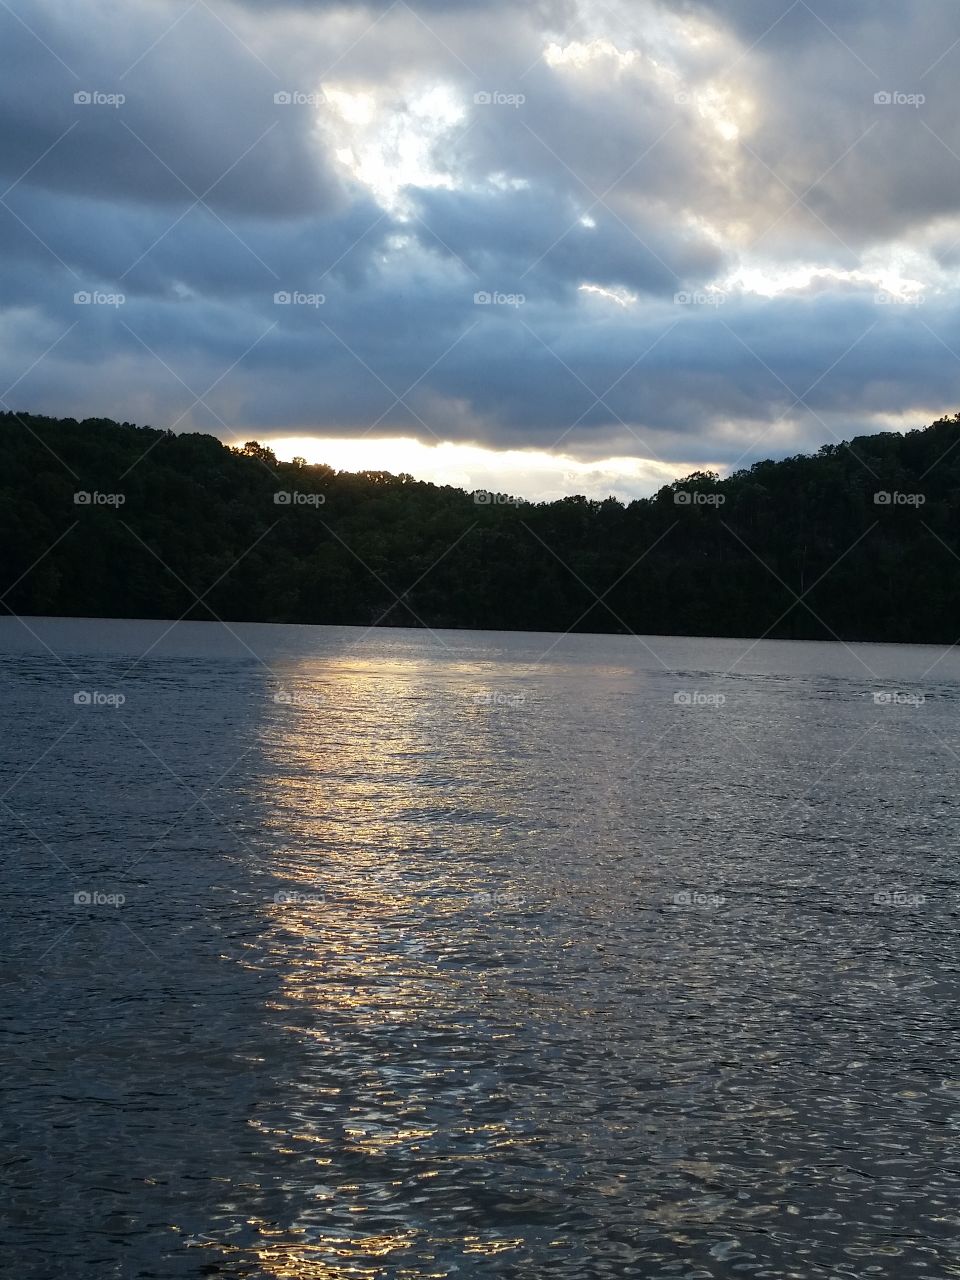 sun setting on the lake